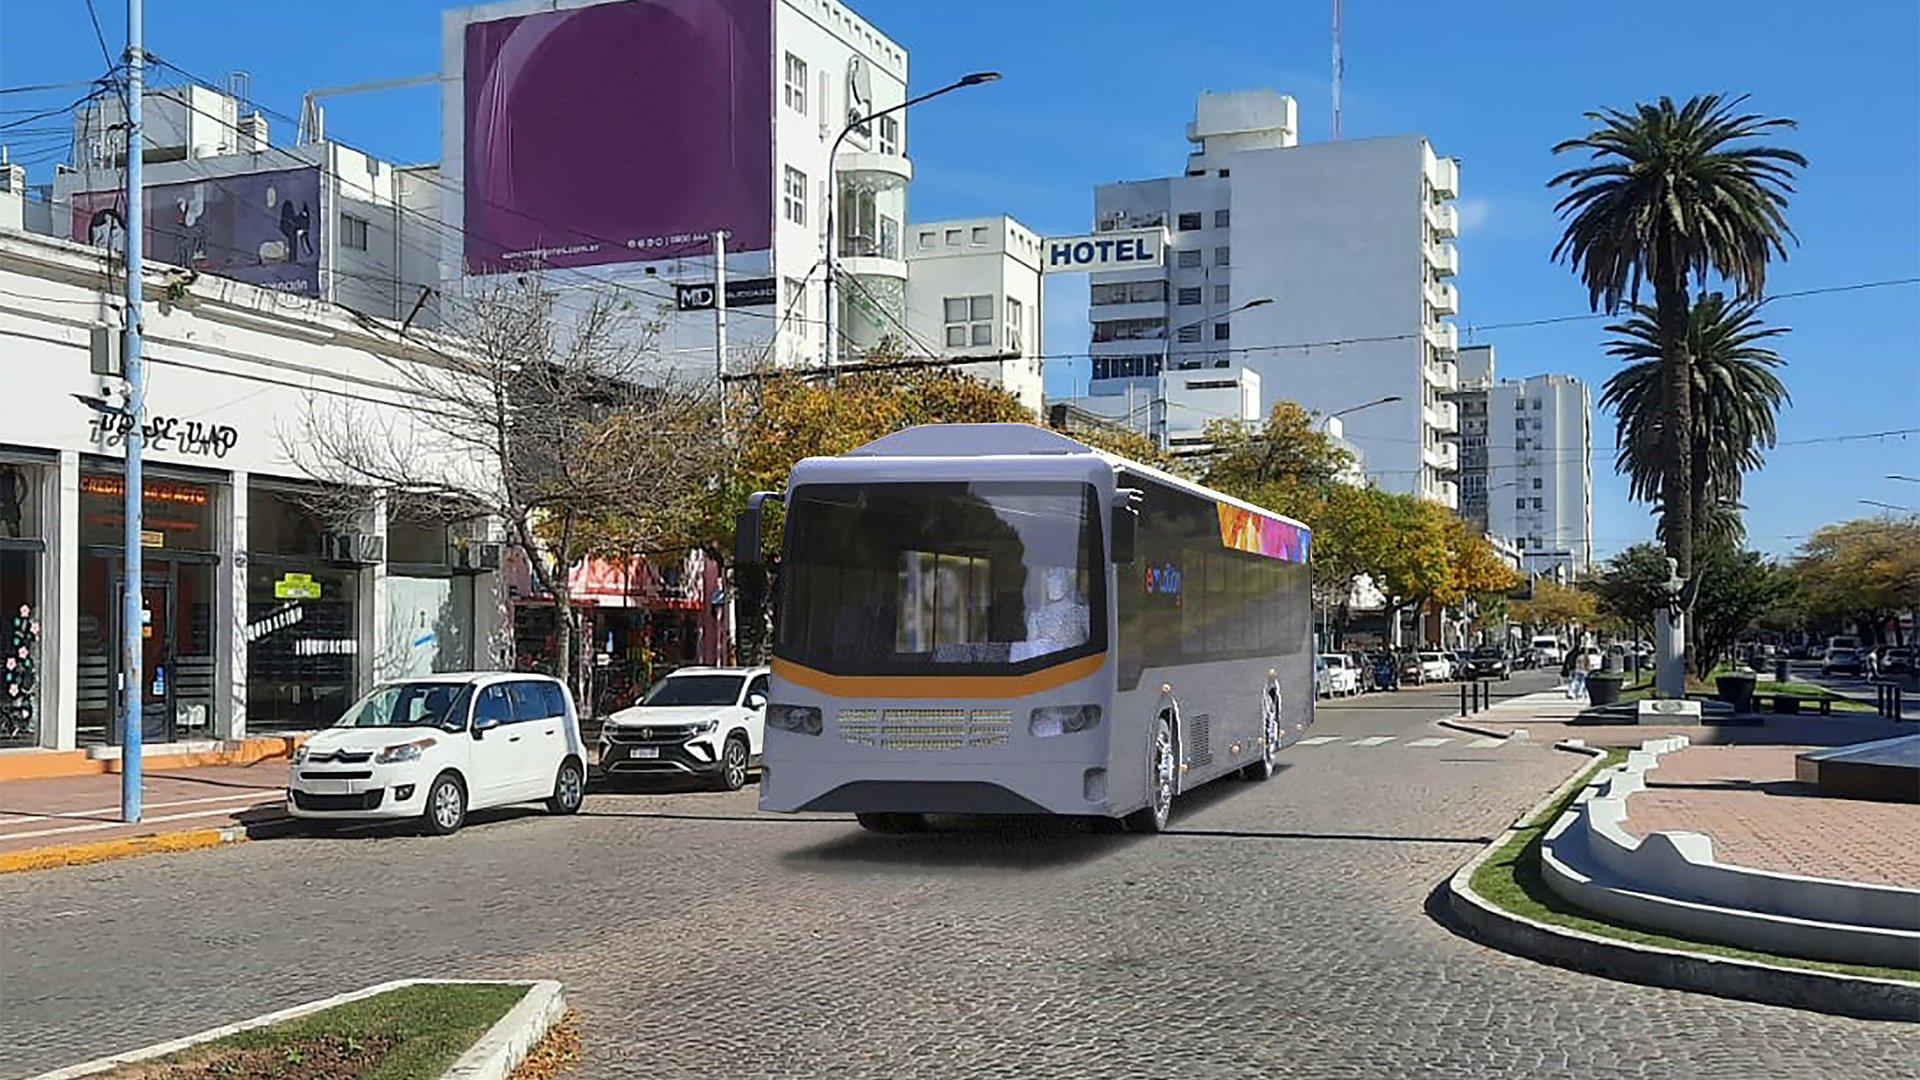 El diseño del bus urbano de pasajeros eléctrico ya está concluido. Ahora se mantienen reuniones periódicas con distintos gobiernos e instituciones para su eventual implementación en las ciudades argentinas